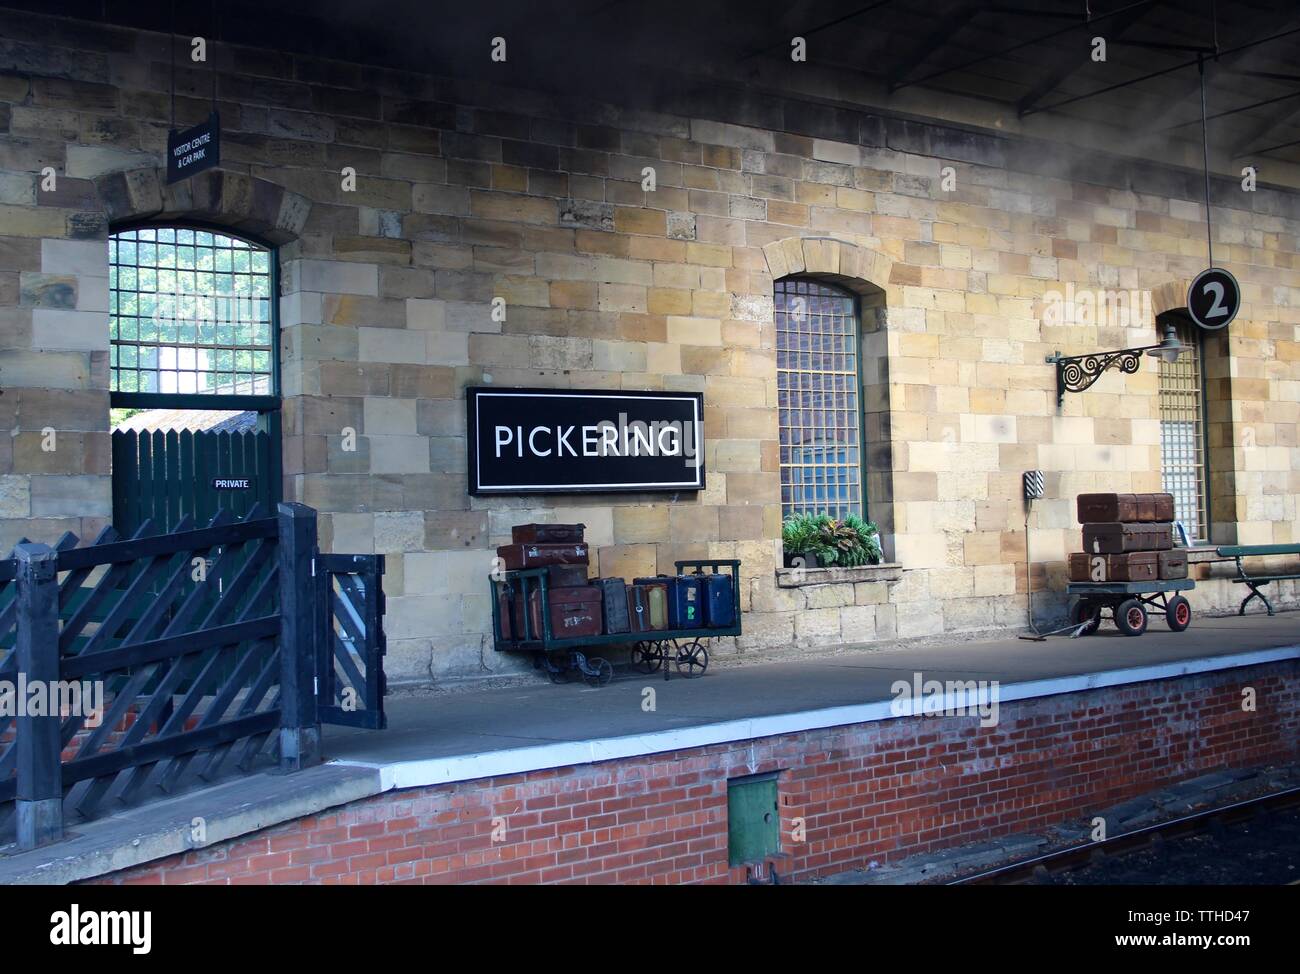 La Station de Train à vapeur de Pickering Ryedale North Yorkshire UK Banque D'Images